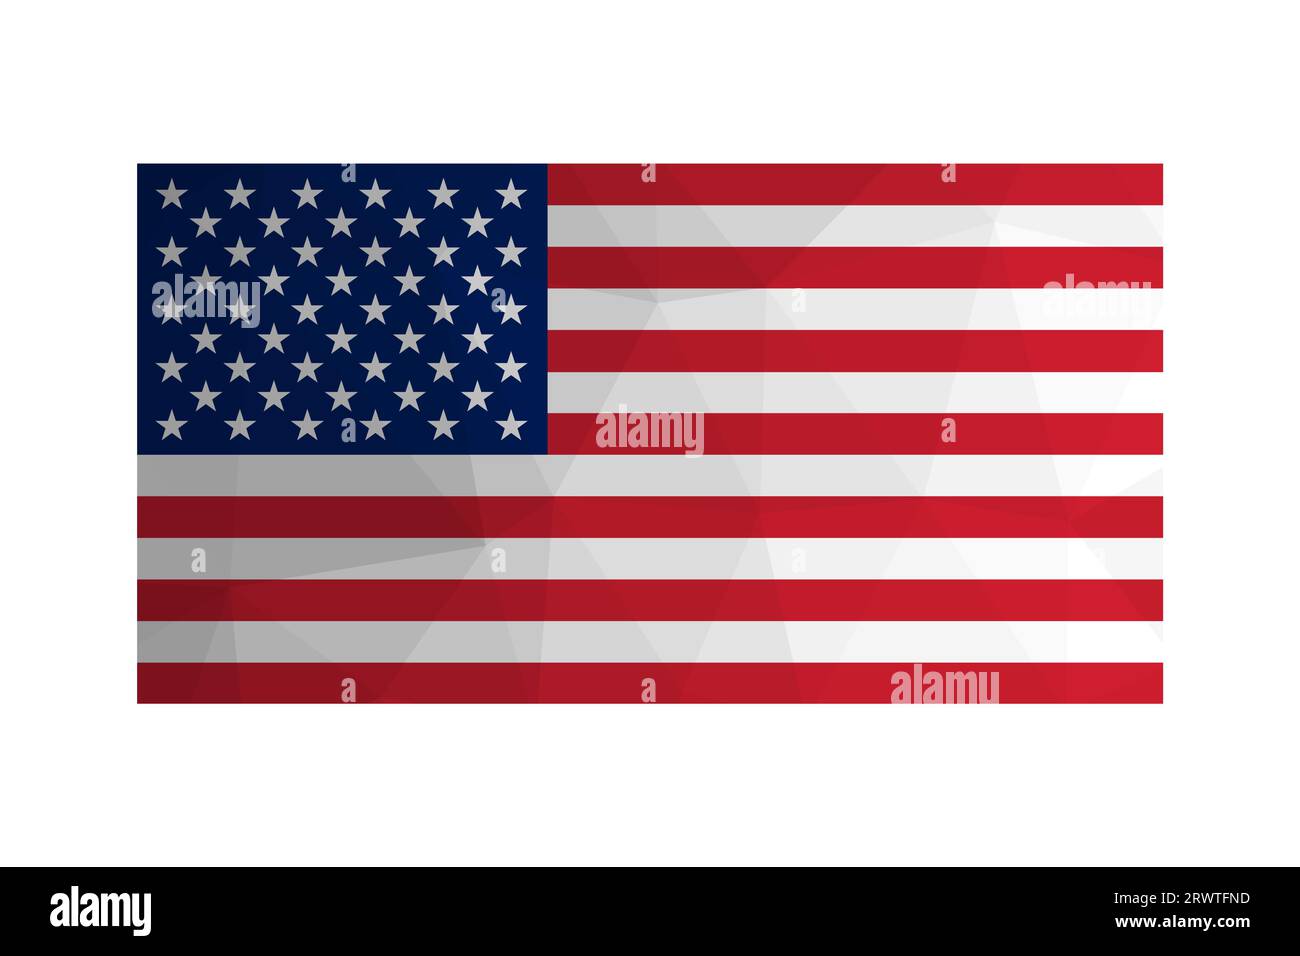 Vektor-isolierte Abbildung. Nationale amerikanische Flagge mit Sternen und Streifen. Offizielles Symbol der USA - Old Glory. Kreatives Design in niedriger Poly-styl-Qualität Stock Vektor